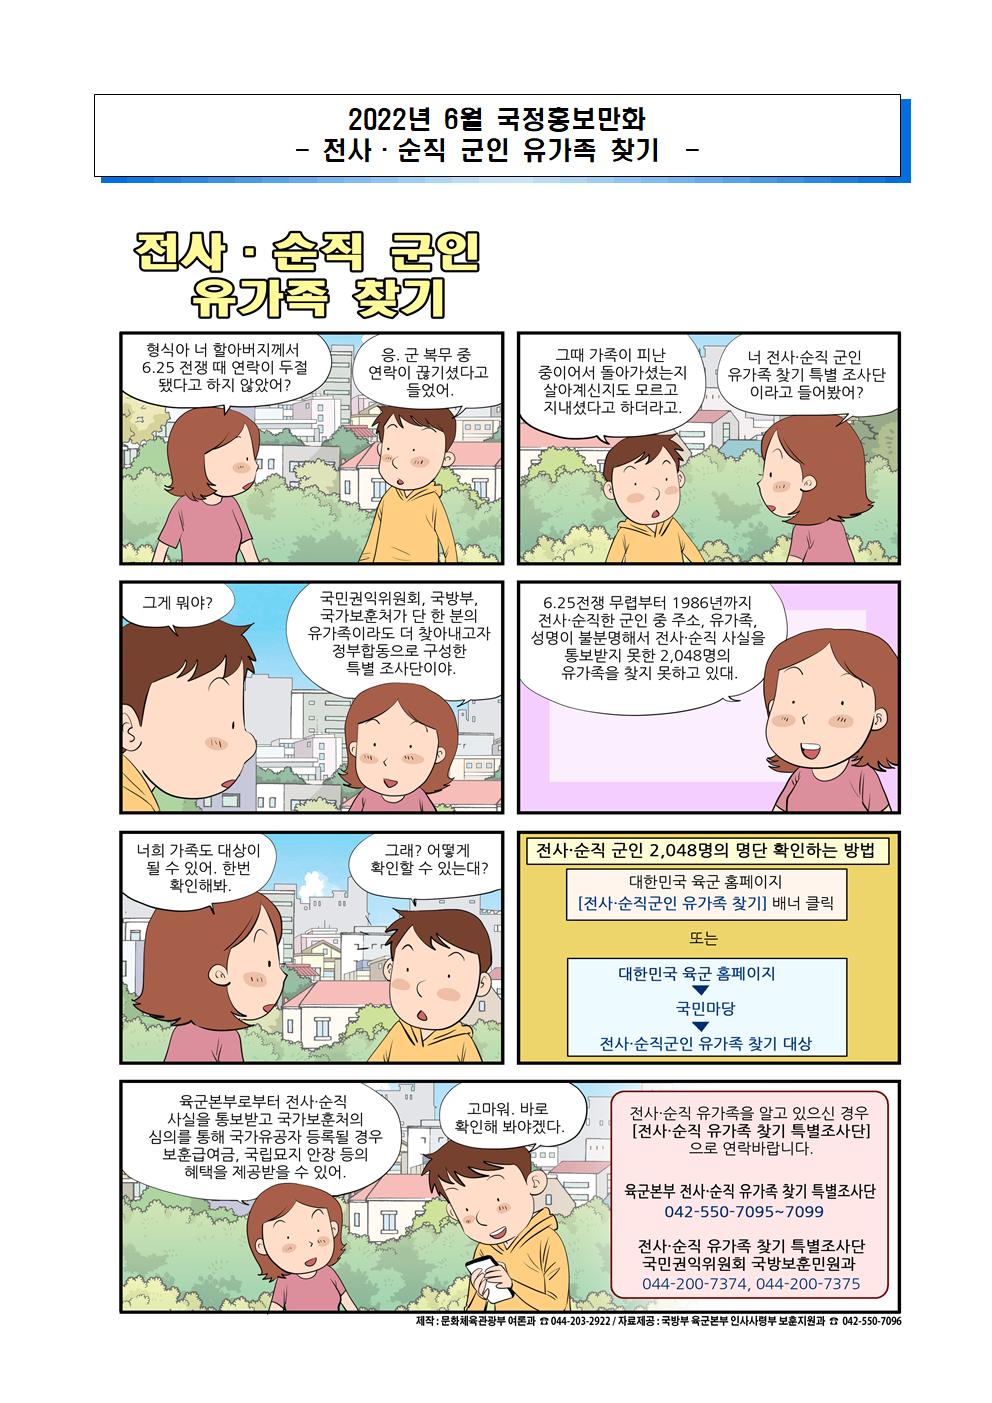 2022년 6월 국정 홍보 만화(전사-순직 군인 유가족 찾기, 가공식품 구매시 영양정보 확인)